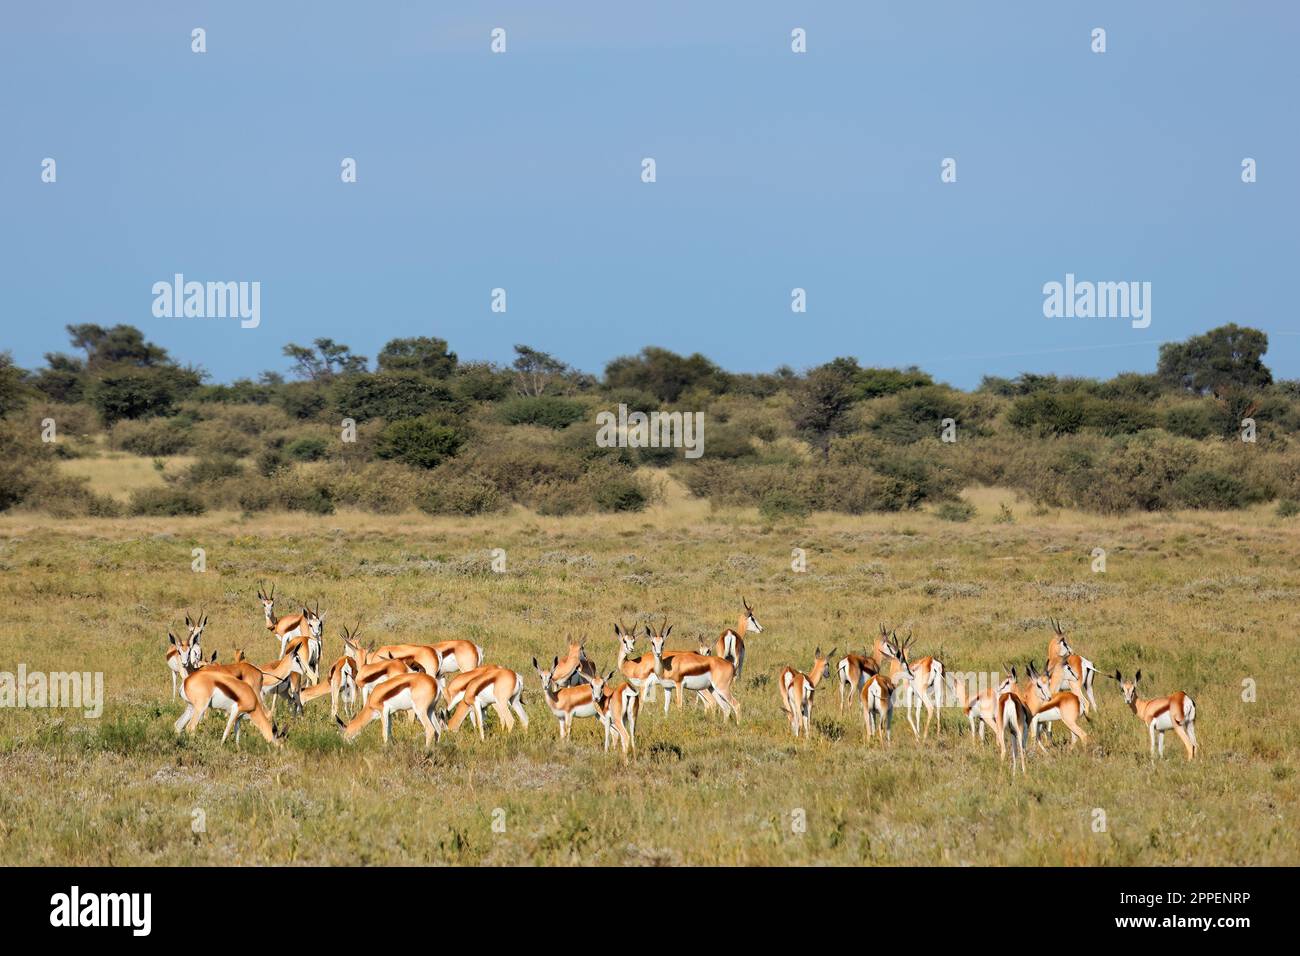 Troupeau d'antilopes de printemps (Antidorcas marsupialis) dans un habitat naturel, Afrique du Sud Banque D'Images